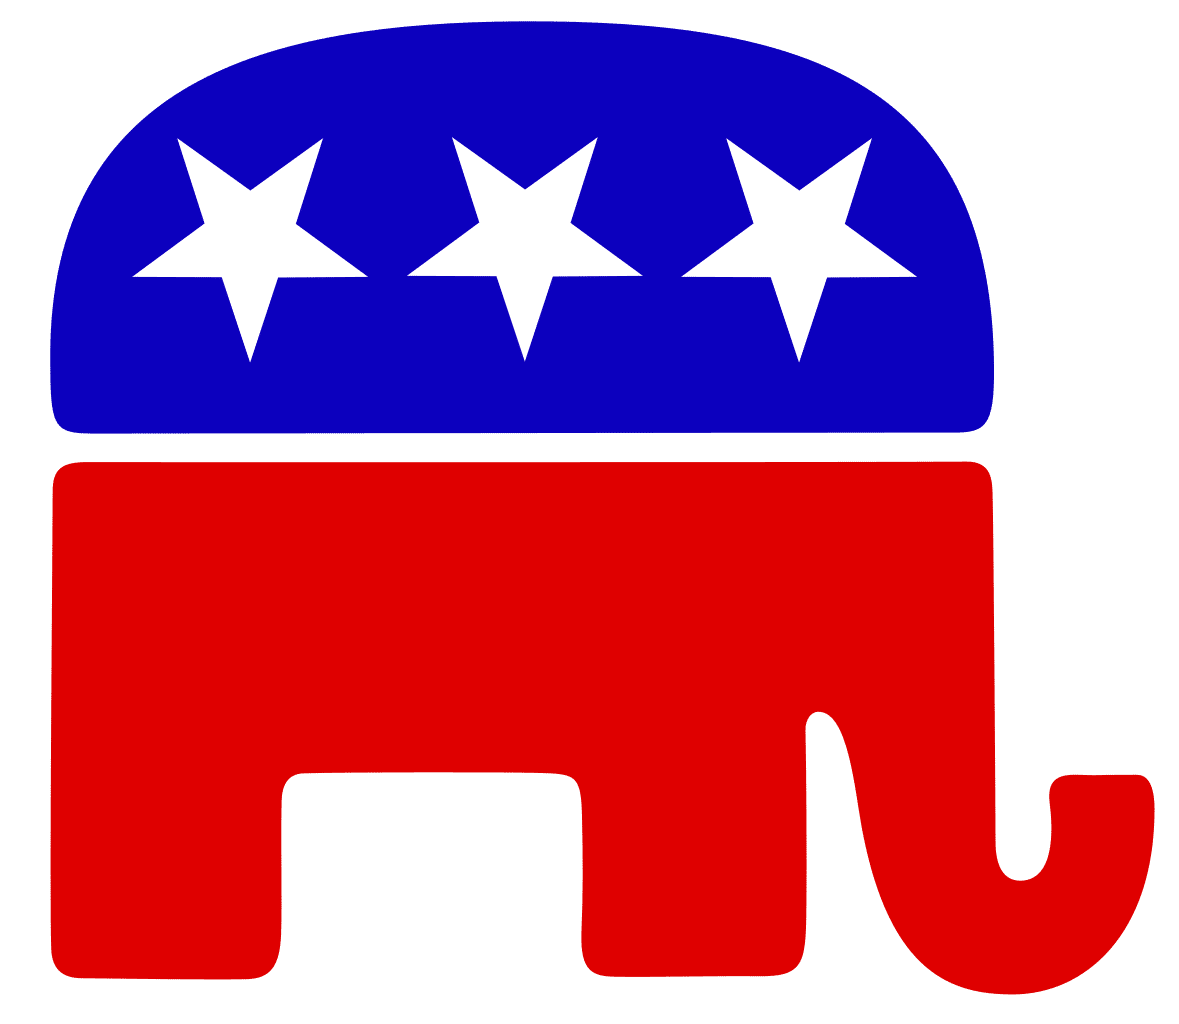 Democrats vs the republicans